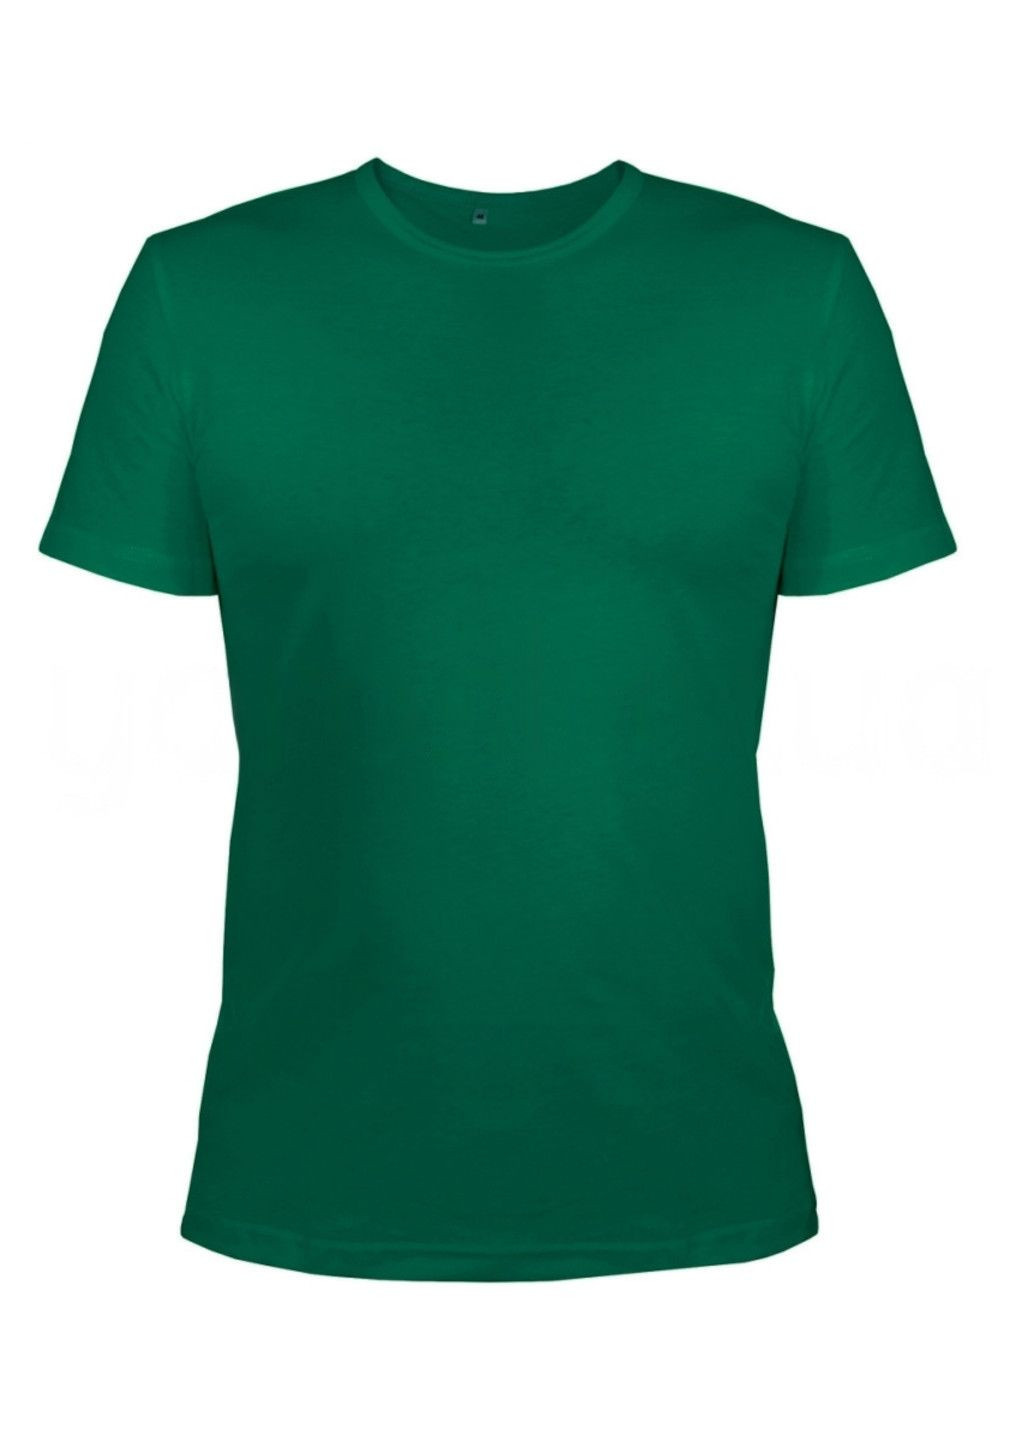 Зелена футболка чоловіча м.45 з коротким рукавом Ярослав